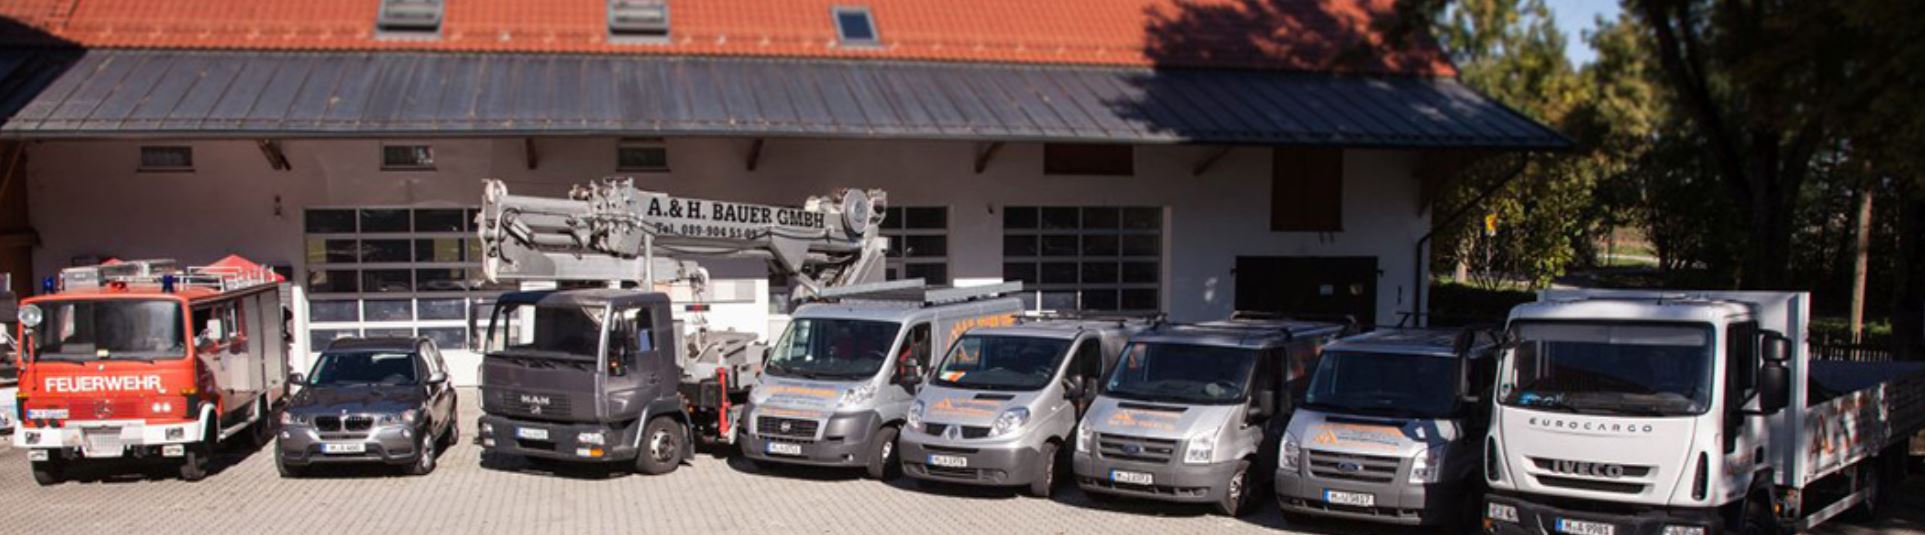 Mitarbeiterfahrzeuge - A. & H. Bauer GmbH Spenglerei und Dachdeckerei München